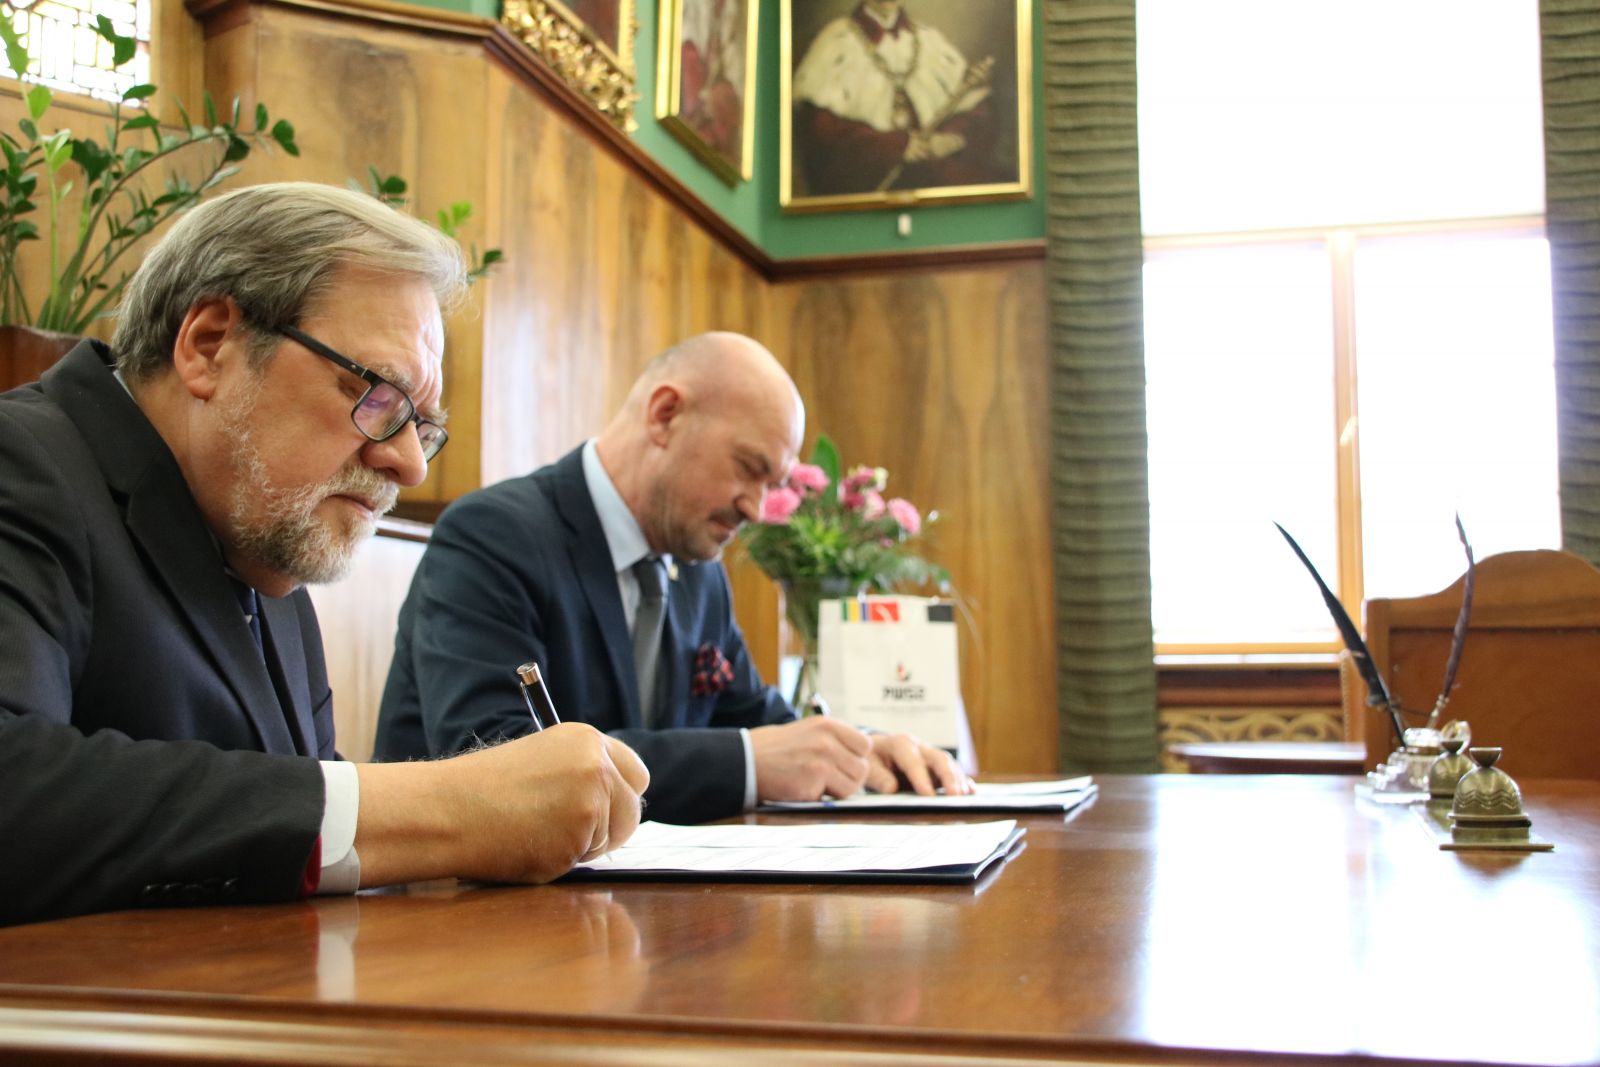 Porozumienie podpisali Rektor UAM prof. dr hab. Andrzej Lesicki i rektor PWSZ w Pile prof. Donat Mierzejewski